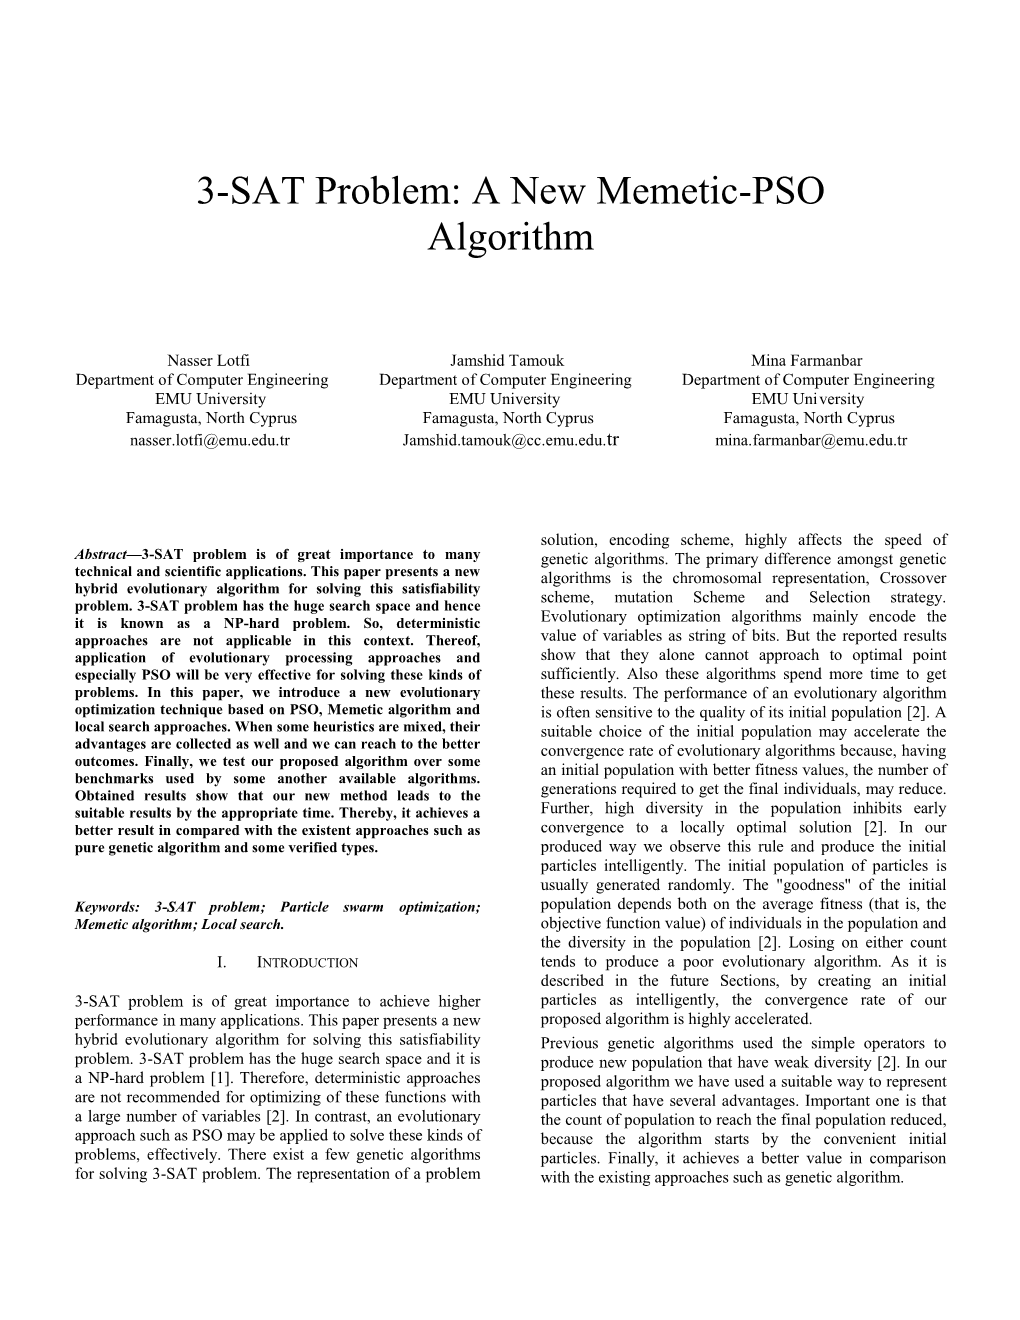 3-SAT Problem: a New Memetic-PSO Algorithm